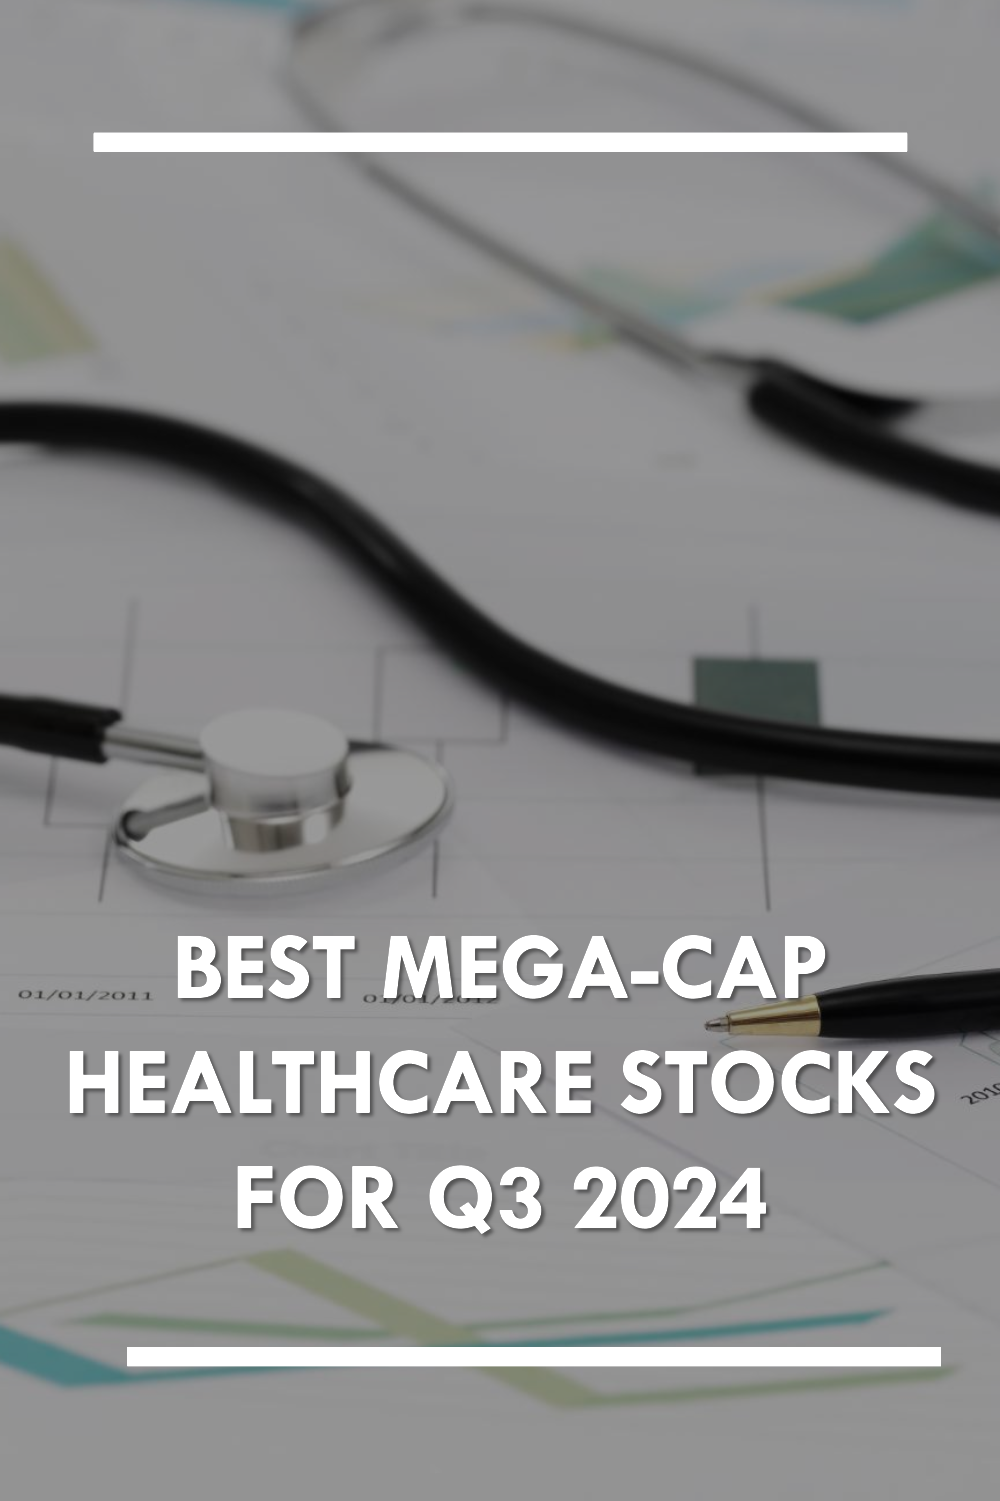 Best mega-cap healthcare stocks to invest in Q3 2024